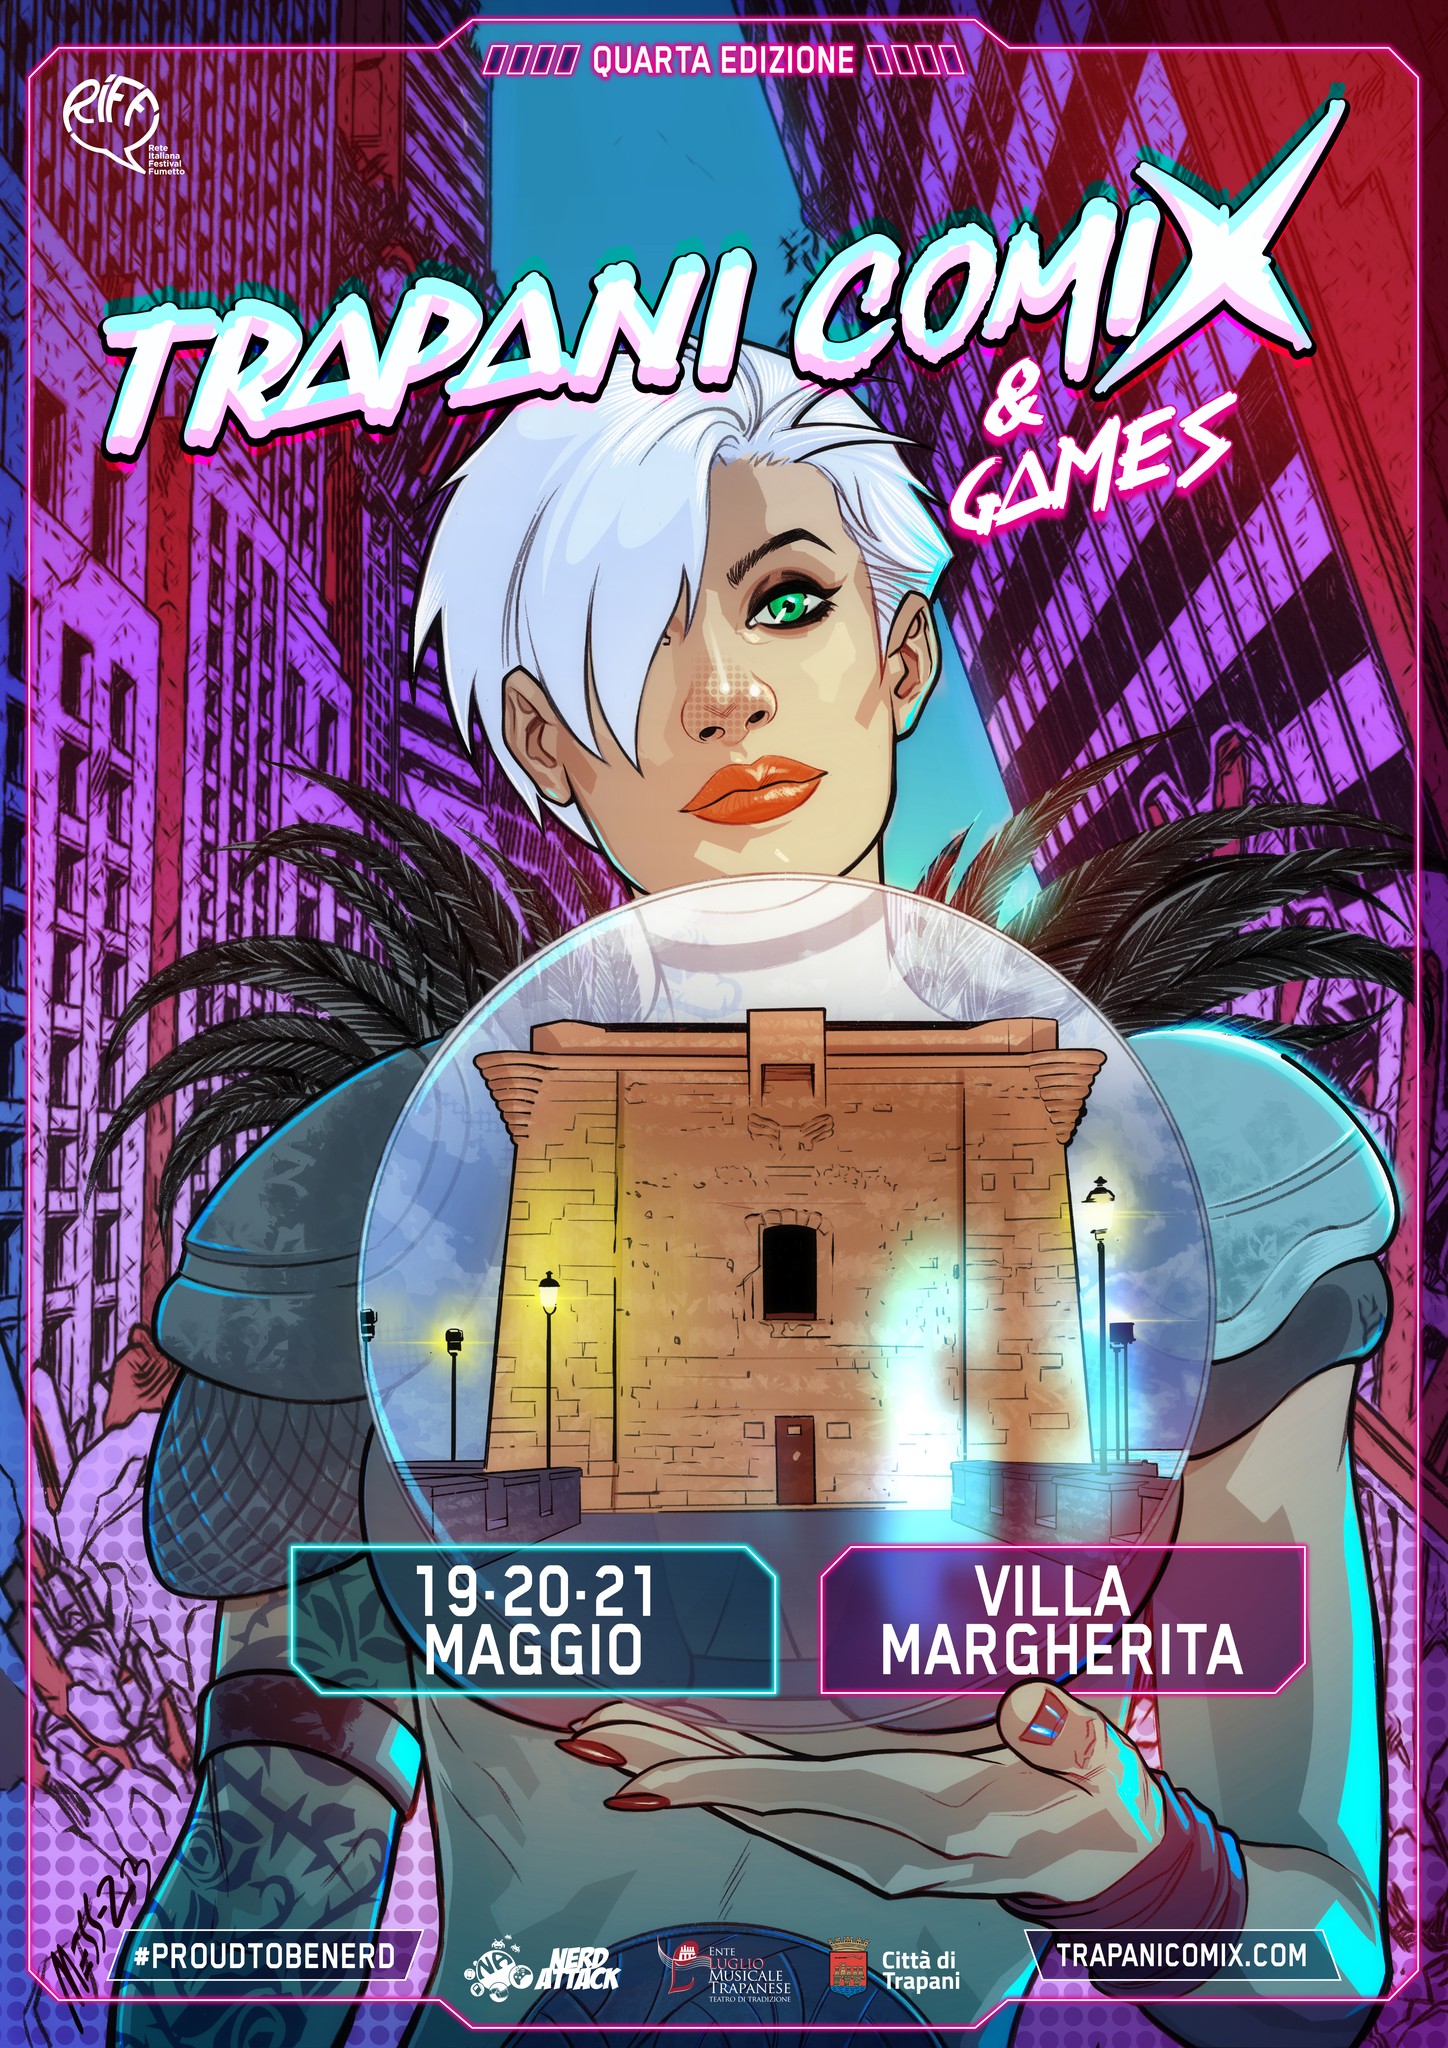 Trapani Comix & Games ritorna dal 19 al 21 maggio 2023